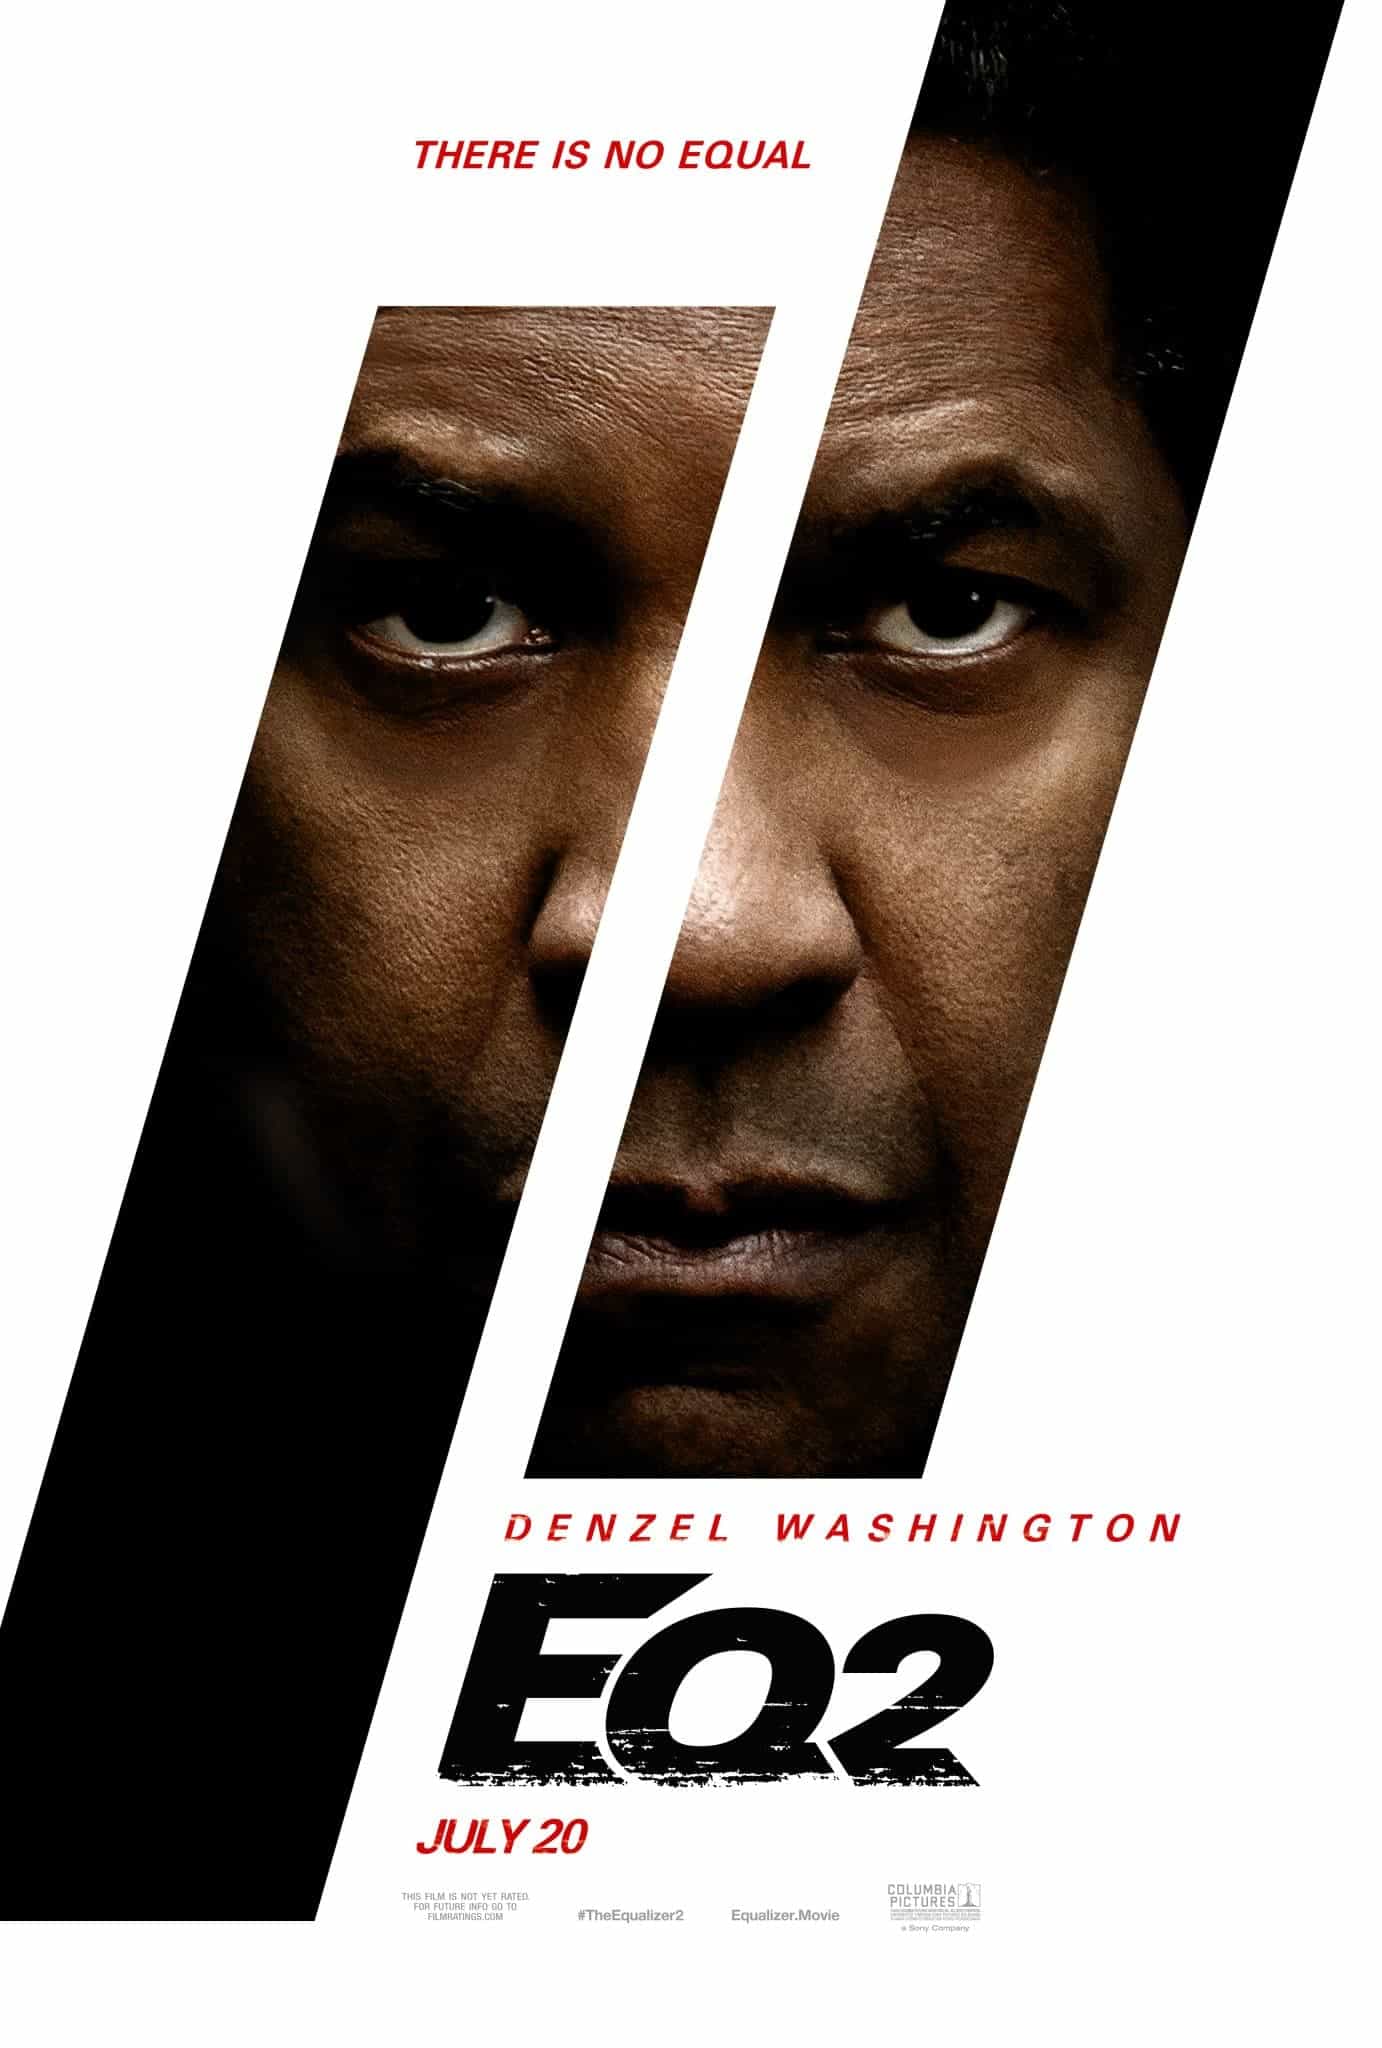 First trailer for Denzel Washington sequel The Equalizer 2